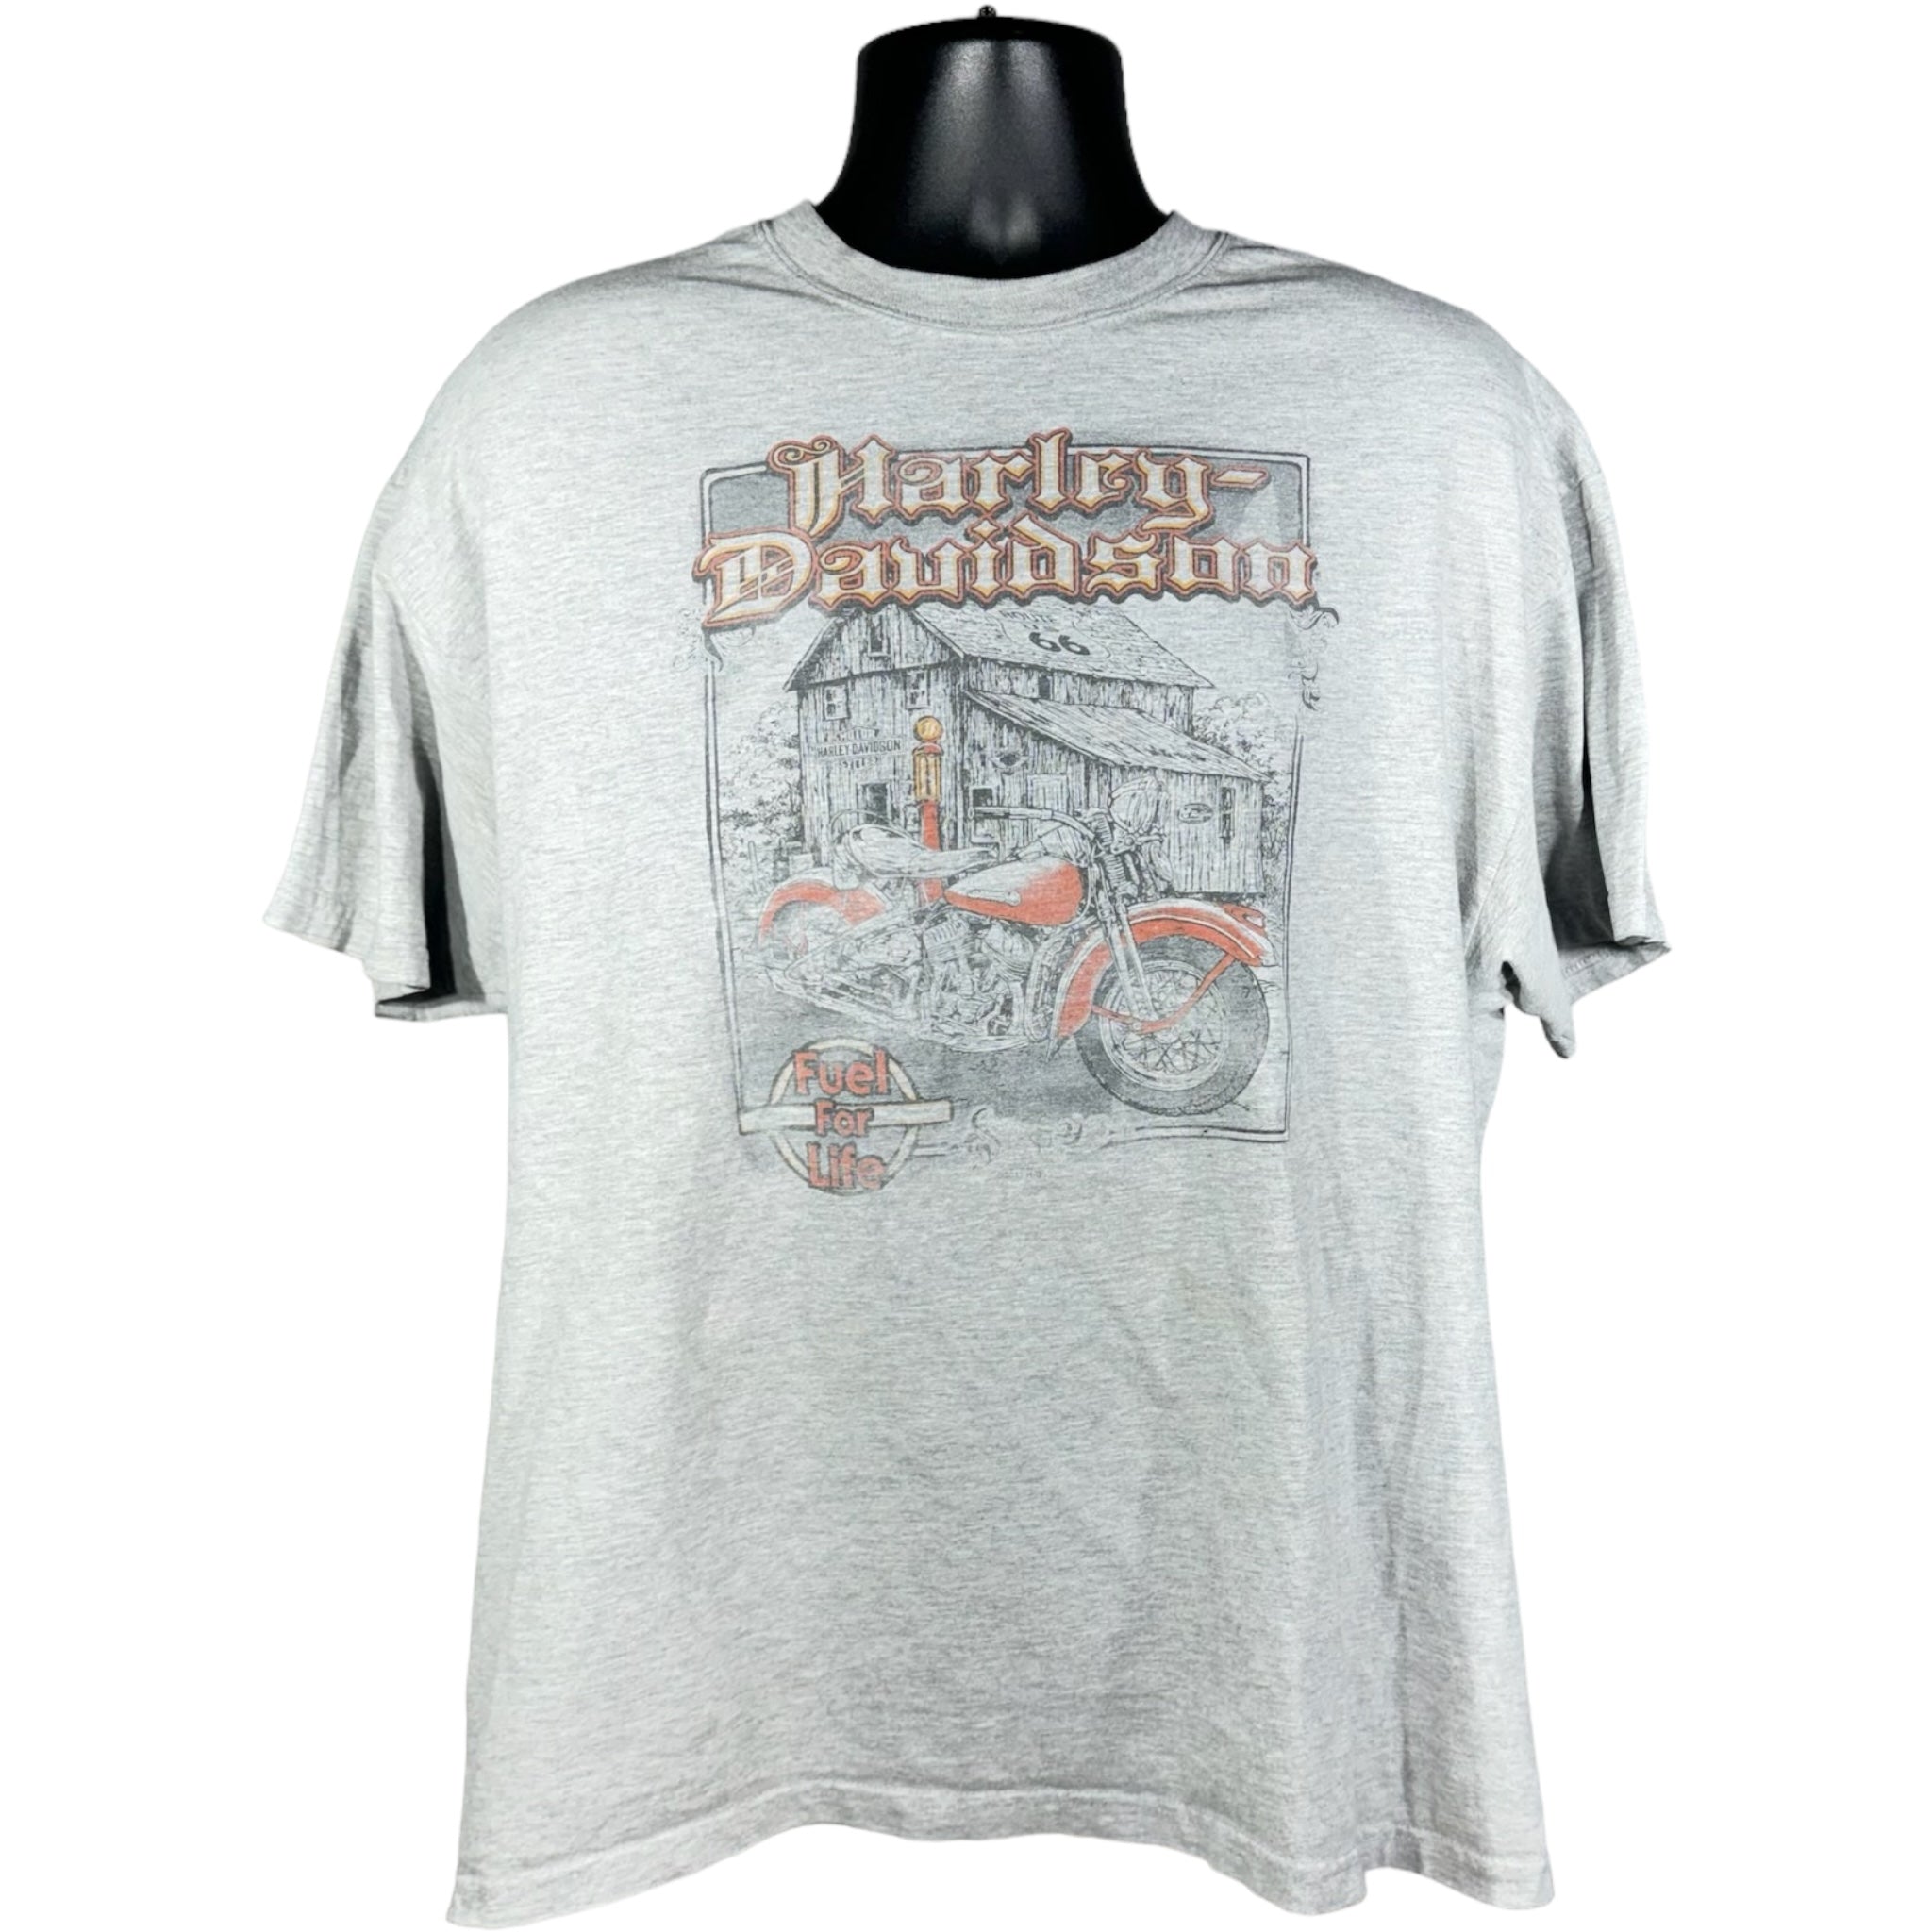 Vintage Harley Davidson "Fuel For Life" Tee 90s